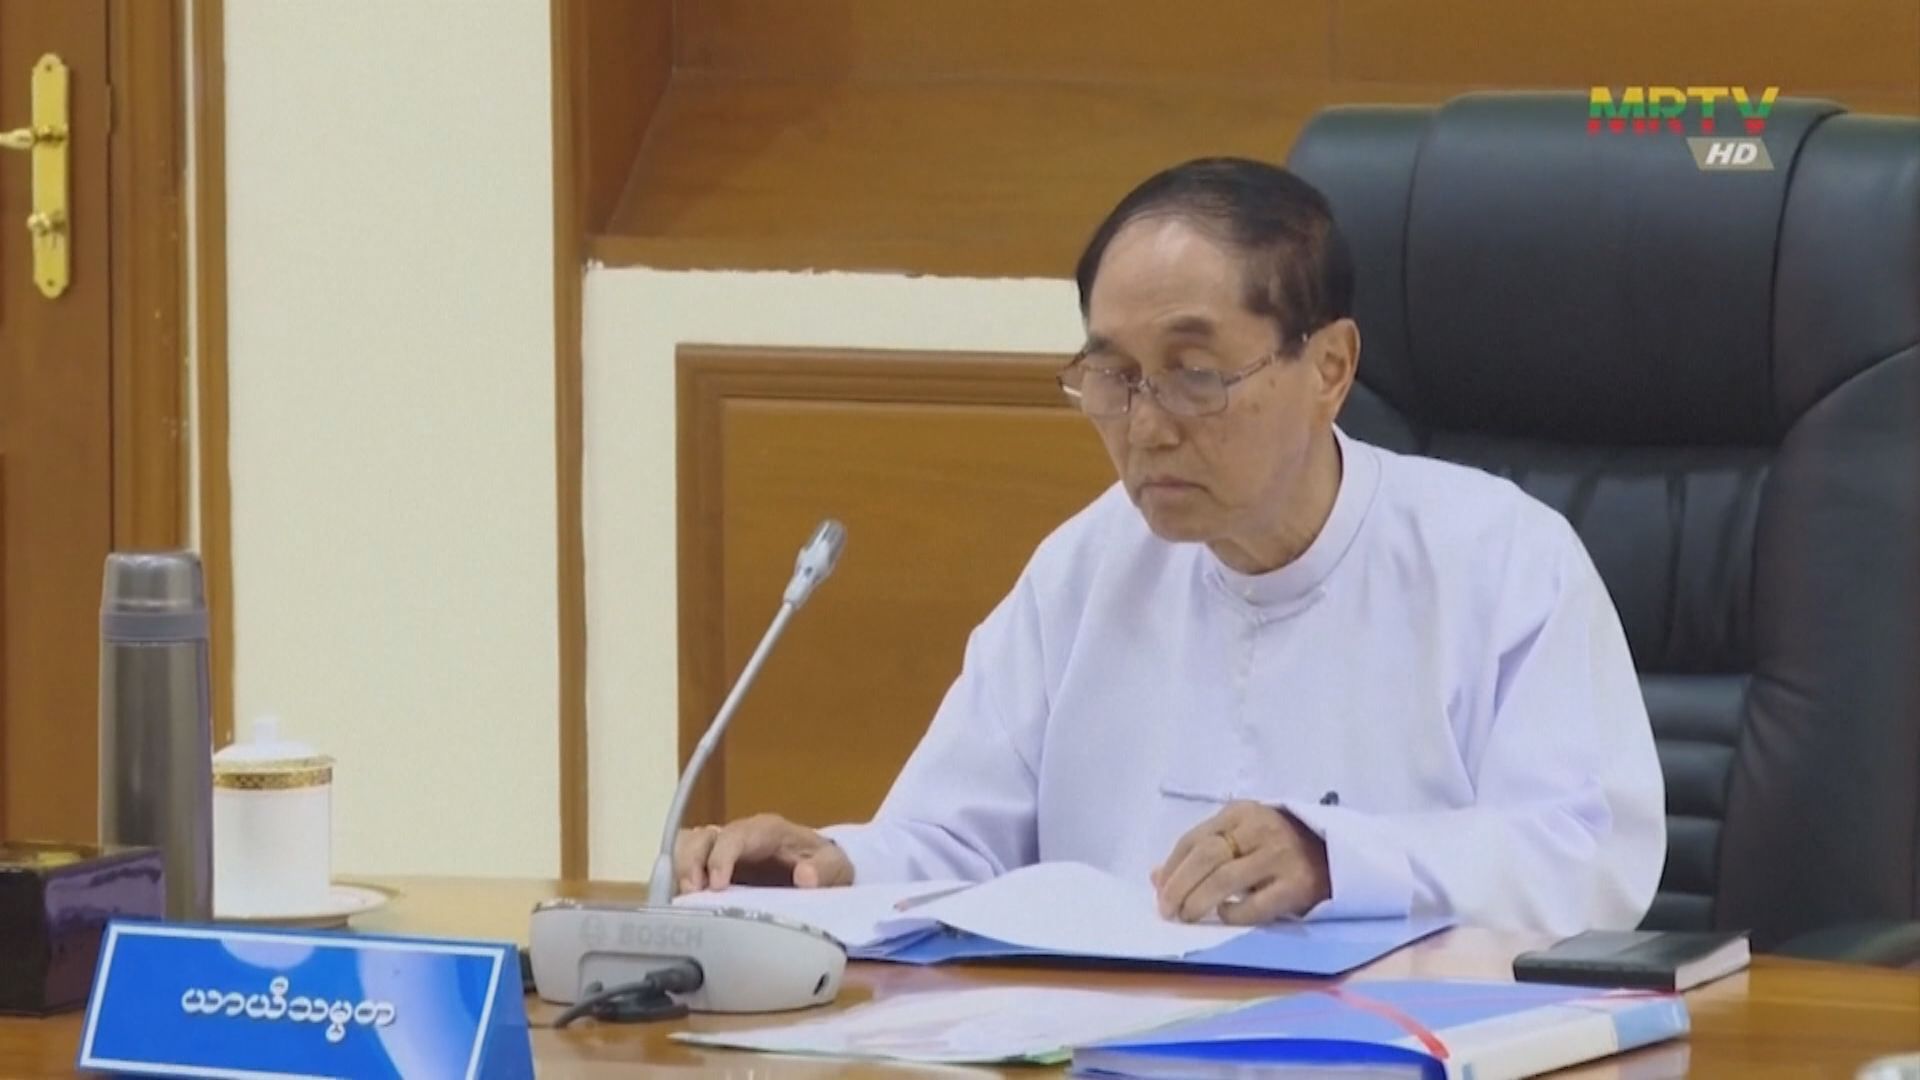 緬甸代理總統敏瑞患病 將職務移交予敏昂萊